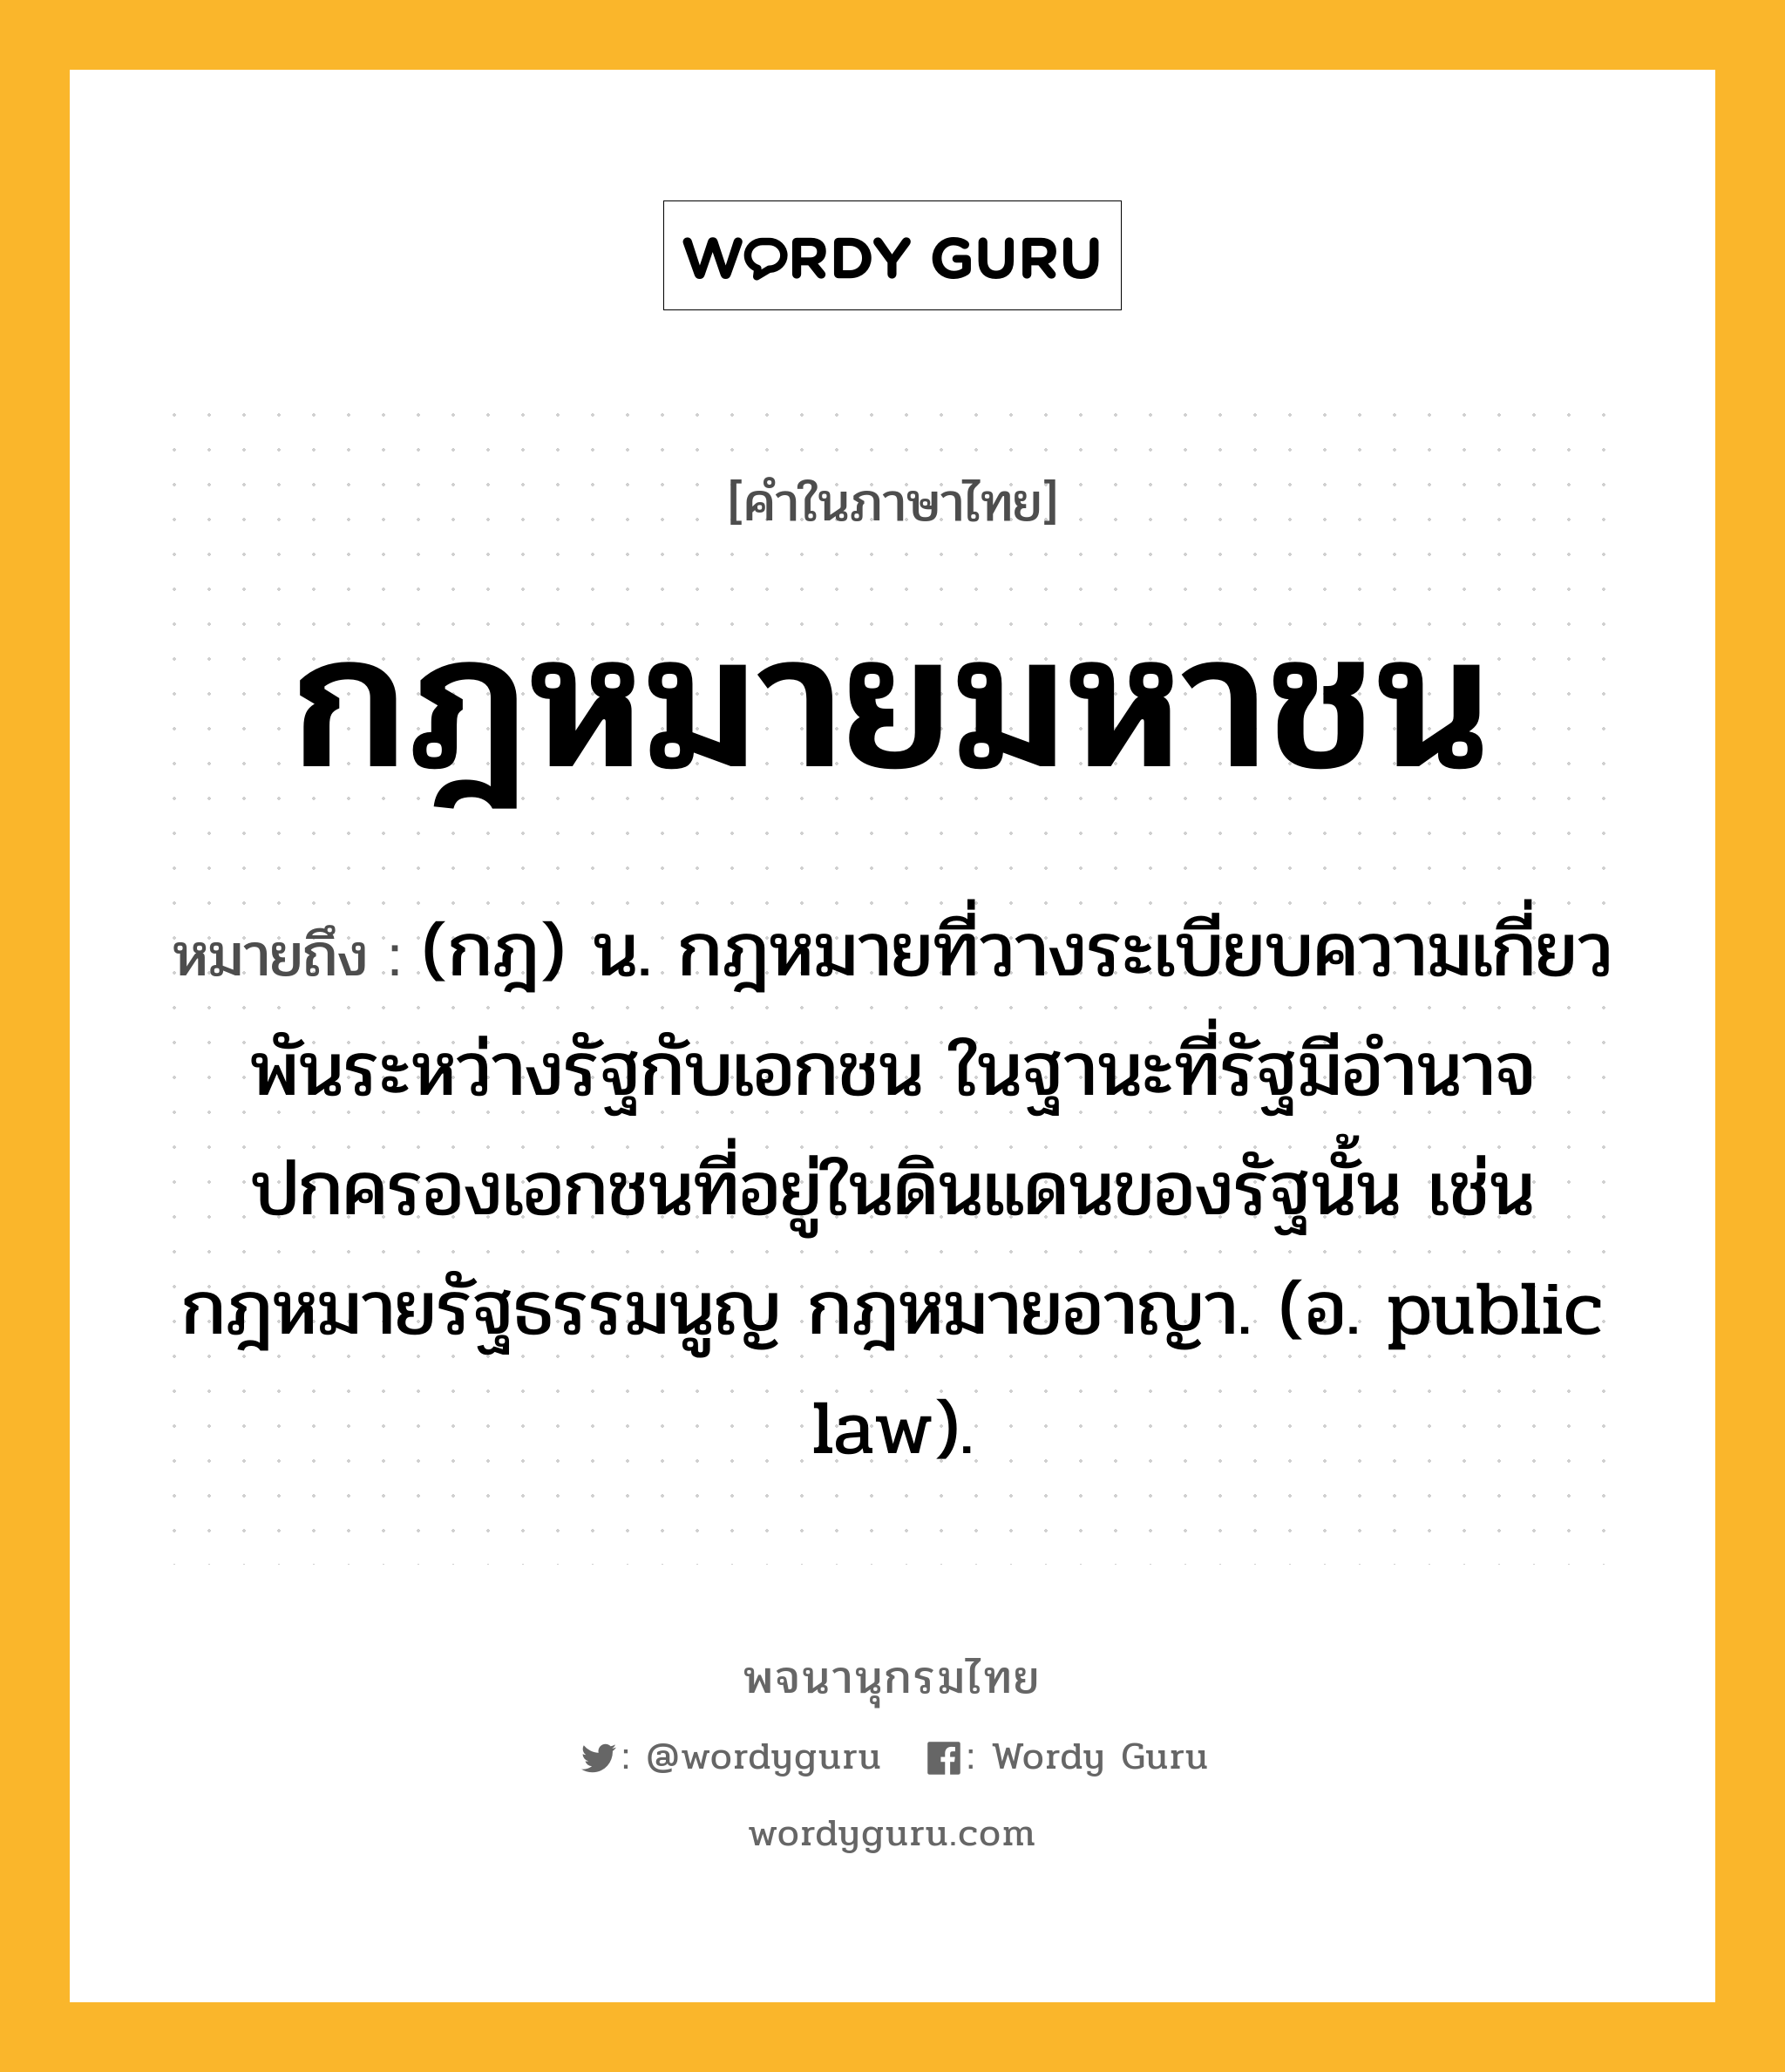 กฎหมายมหาชน ความหมาย หมายถึงอะไร?, คำในภาษาไทย กฎหมายมหาชน หมายถึง (กฎ) น. กฎหมายที่วางระเบียบความเกี่ยวพันระหว่างรัฐกับเอกชน ในฐานะที่รัฐมีอำนาจปกครองเอกชนที่อยู่ในดินแดนของรัฐนั้น เช่น กฎหมายรัฐธรรมนูญ กฎหมายอาญา. (อ. public law).